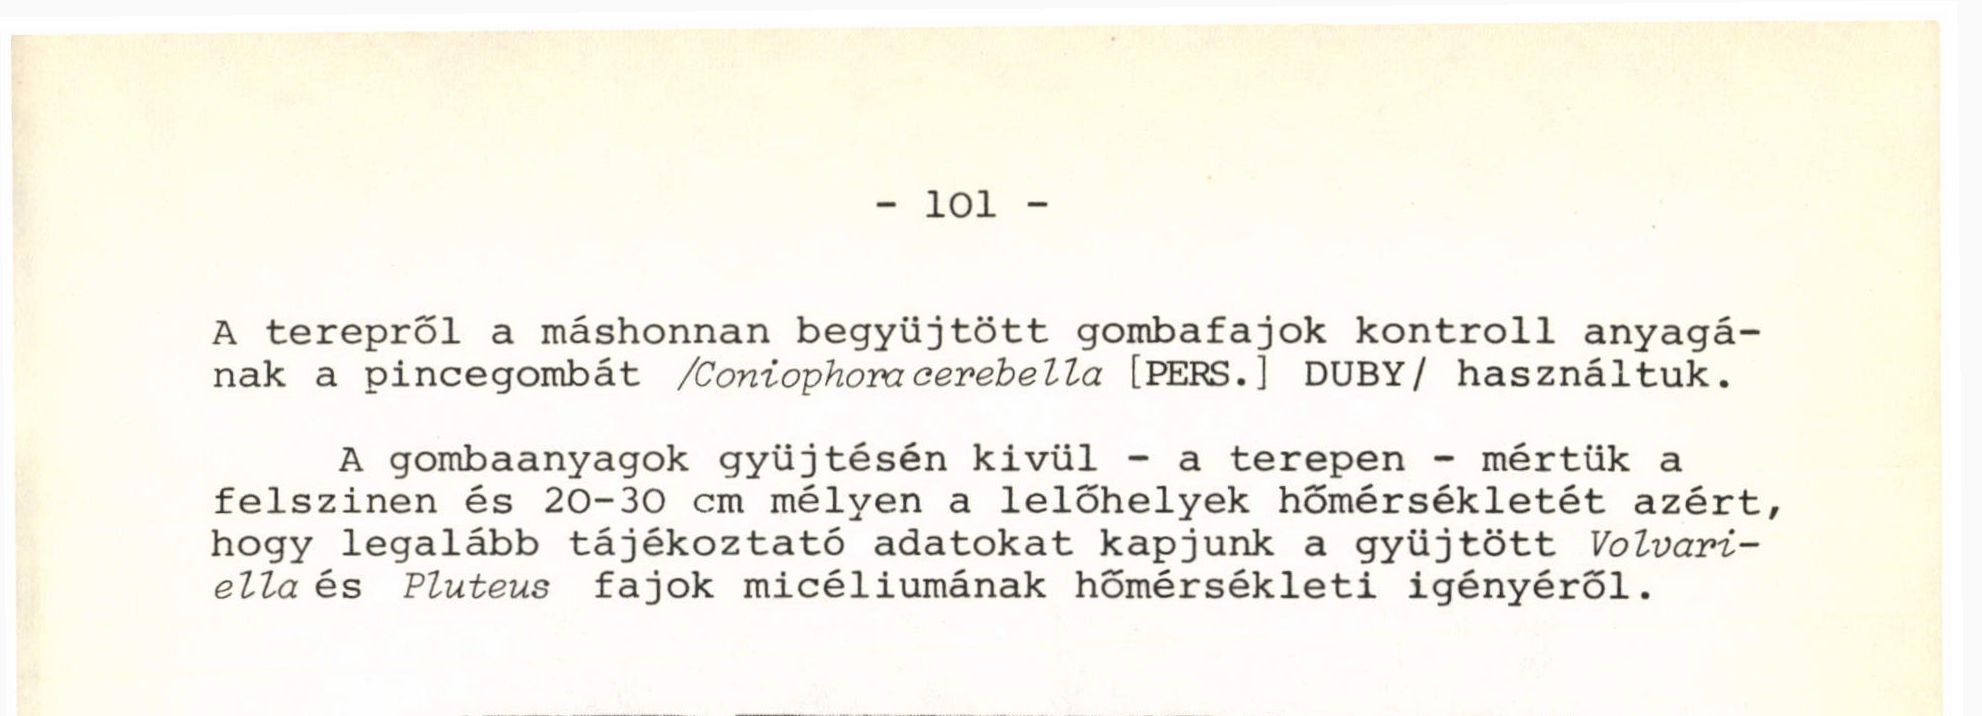 Vinye Sándor major /Bakonyszentlászló/ - 1981. május 10. 1.2 